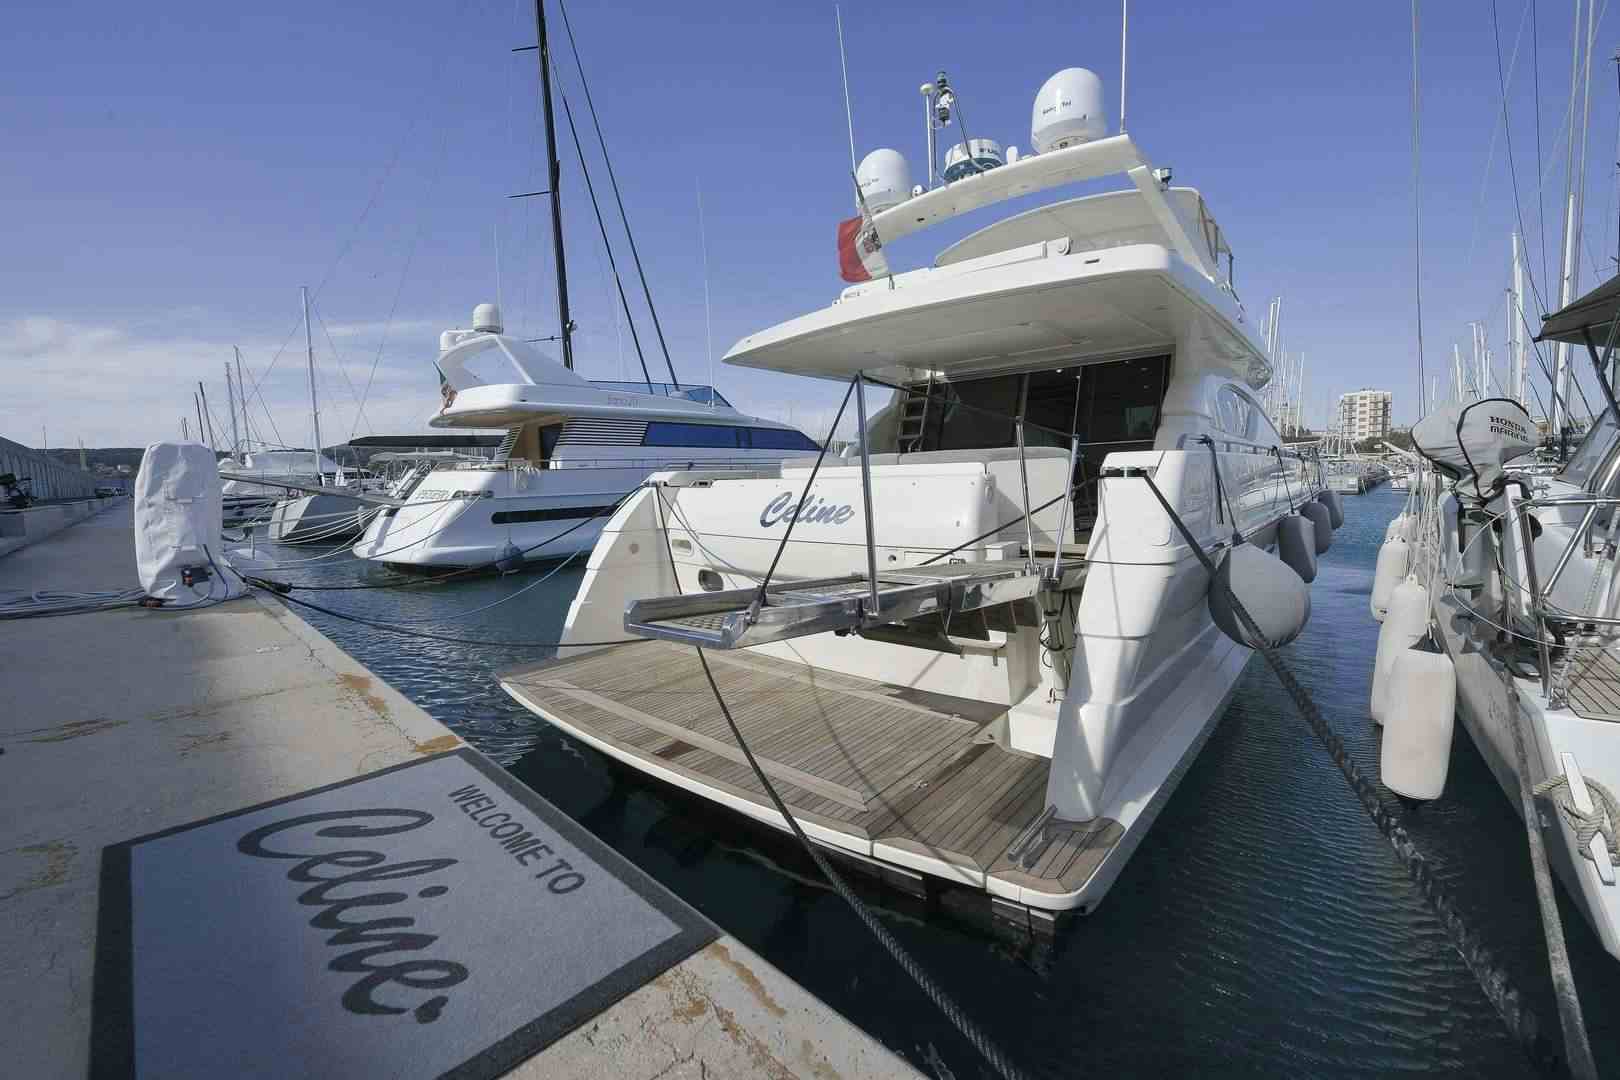 CELINE - Gulet charter worldwide & Boat hire in Fr. Riviera & Tyrrhenian Sea 1